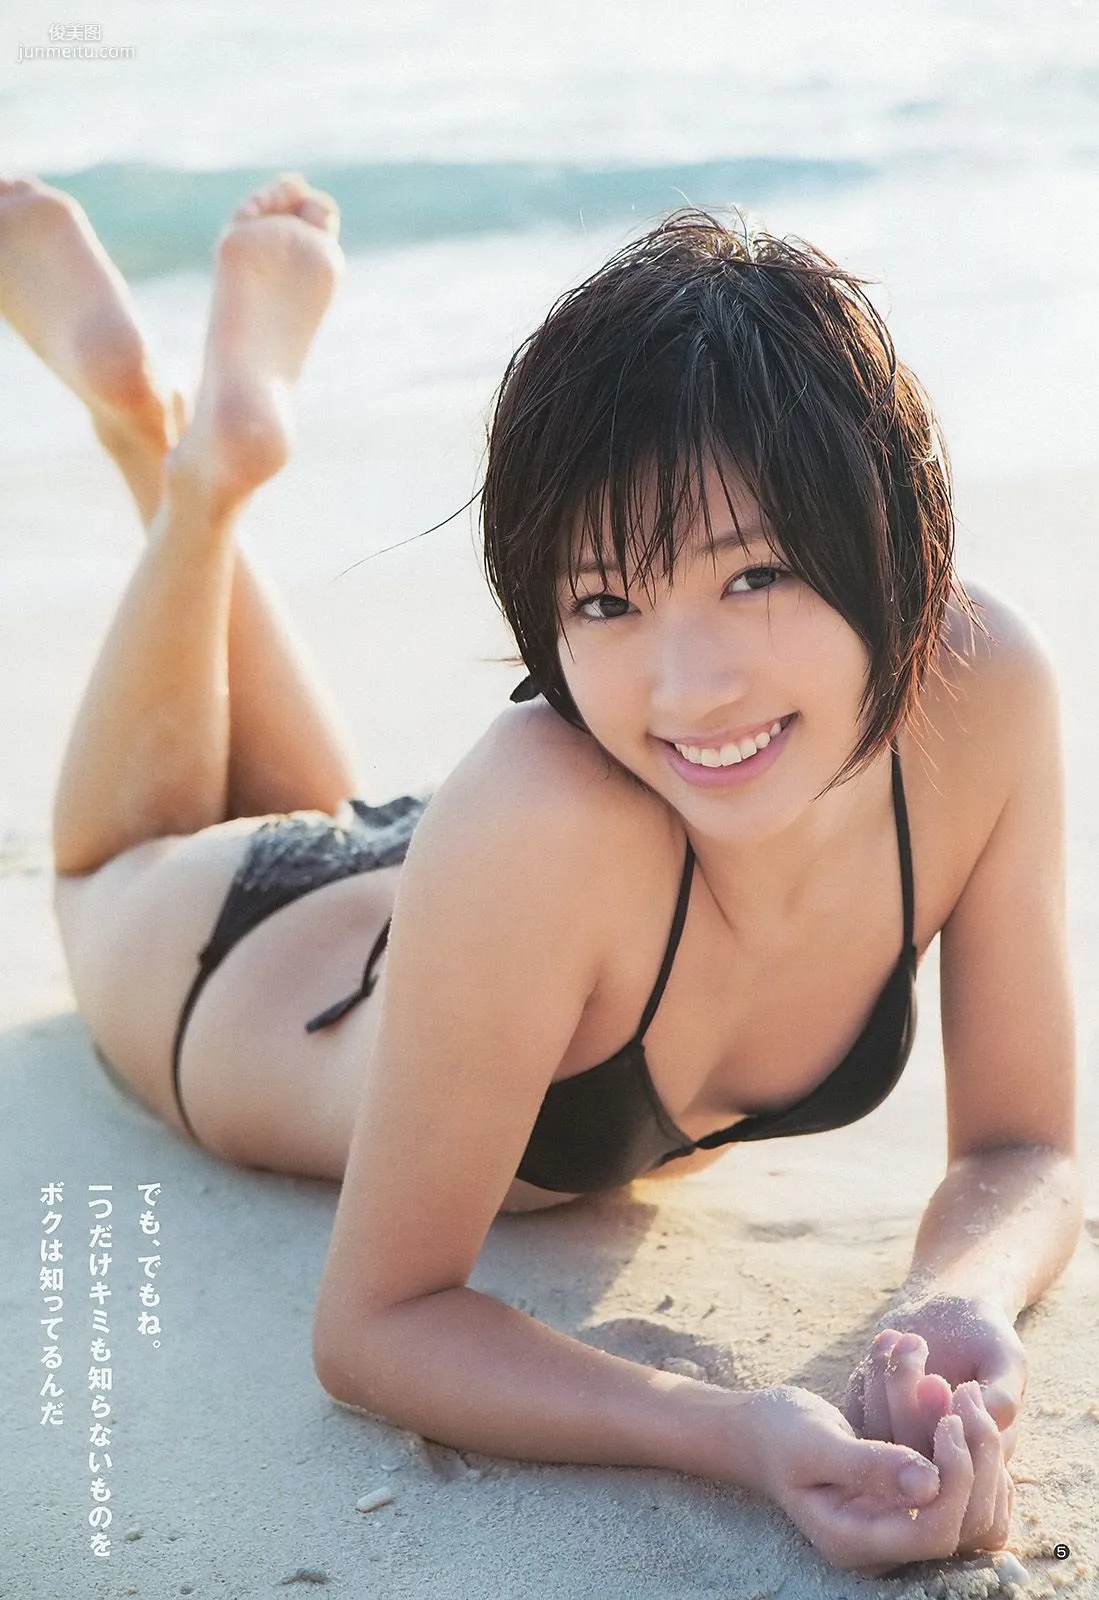 相楽樹 糸山千恵 優希美青 [Weekly Young Jump] 2013年No.50 写真杂志6